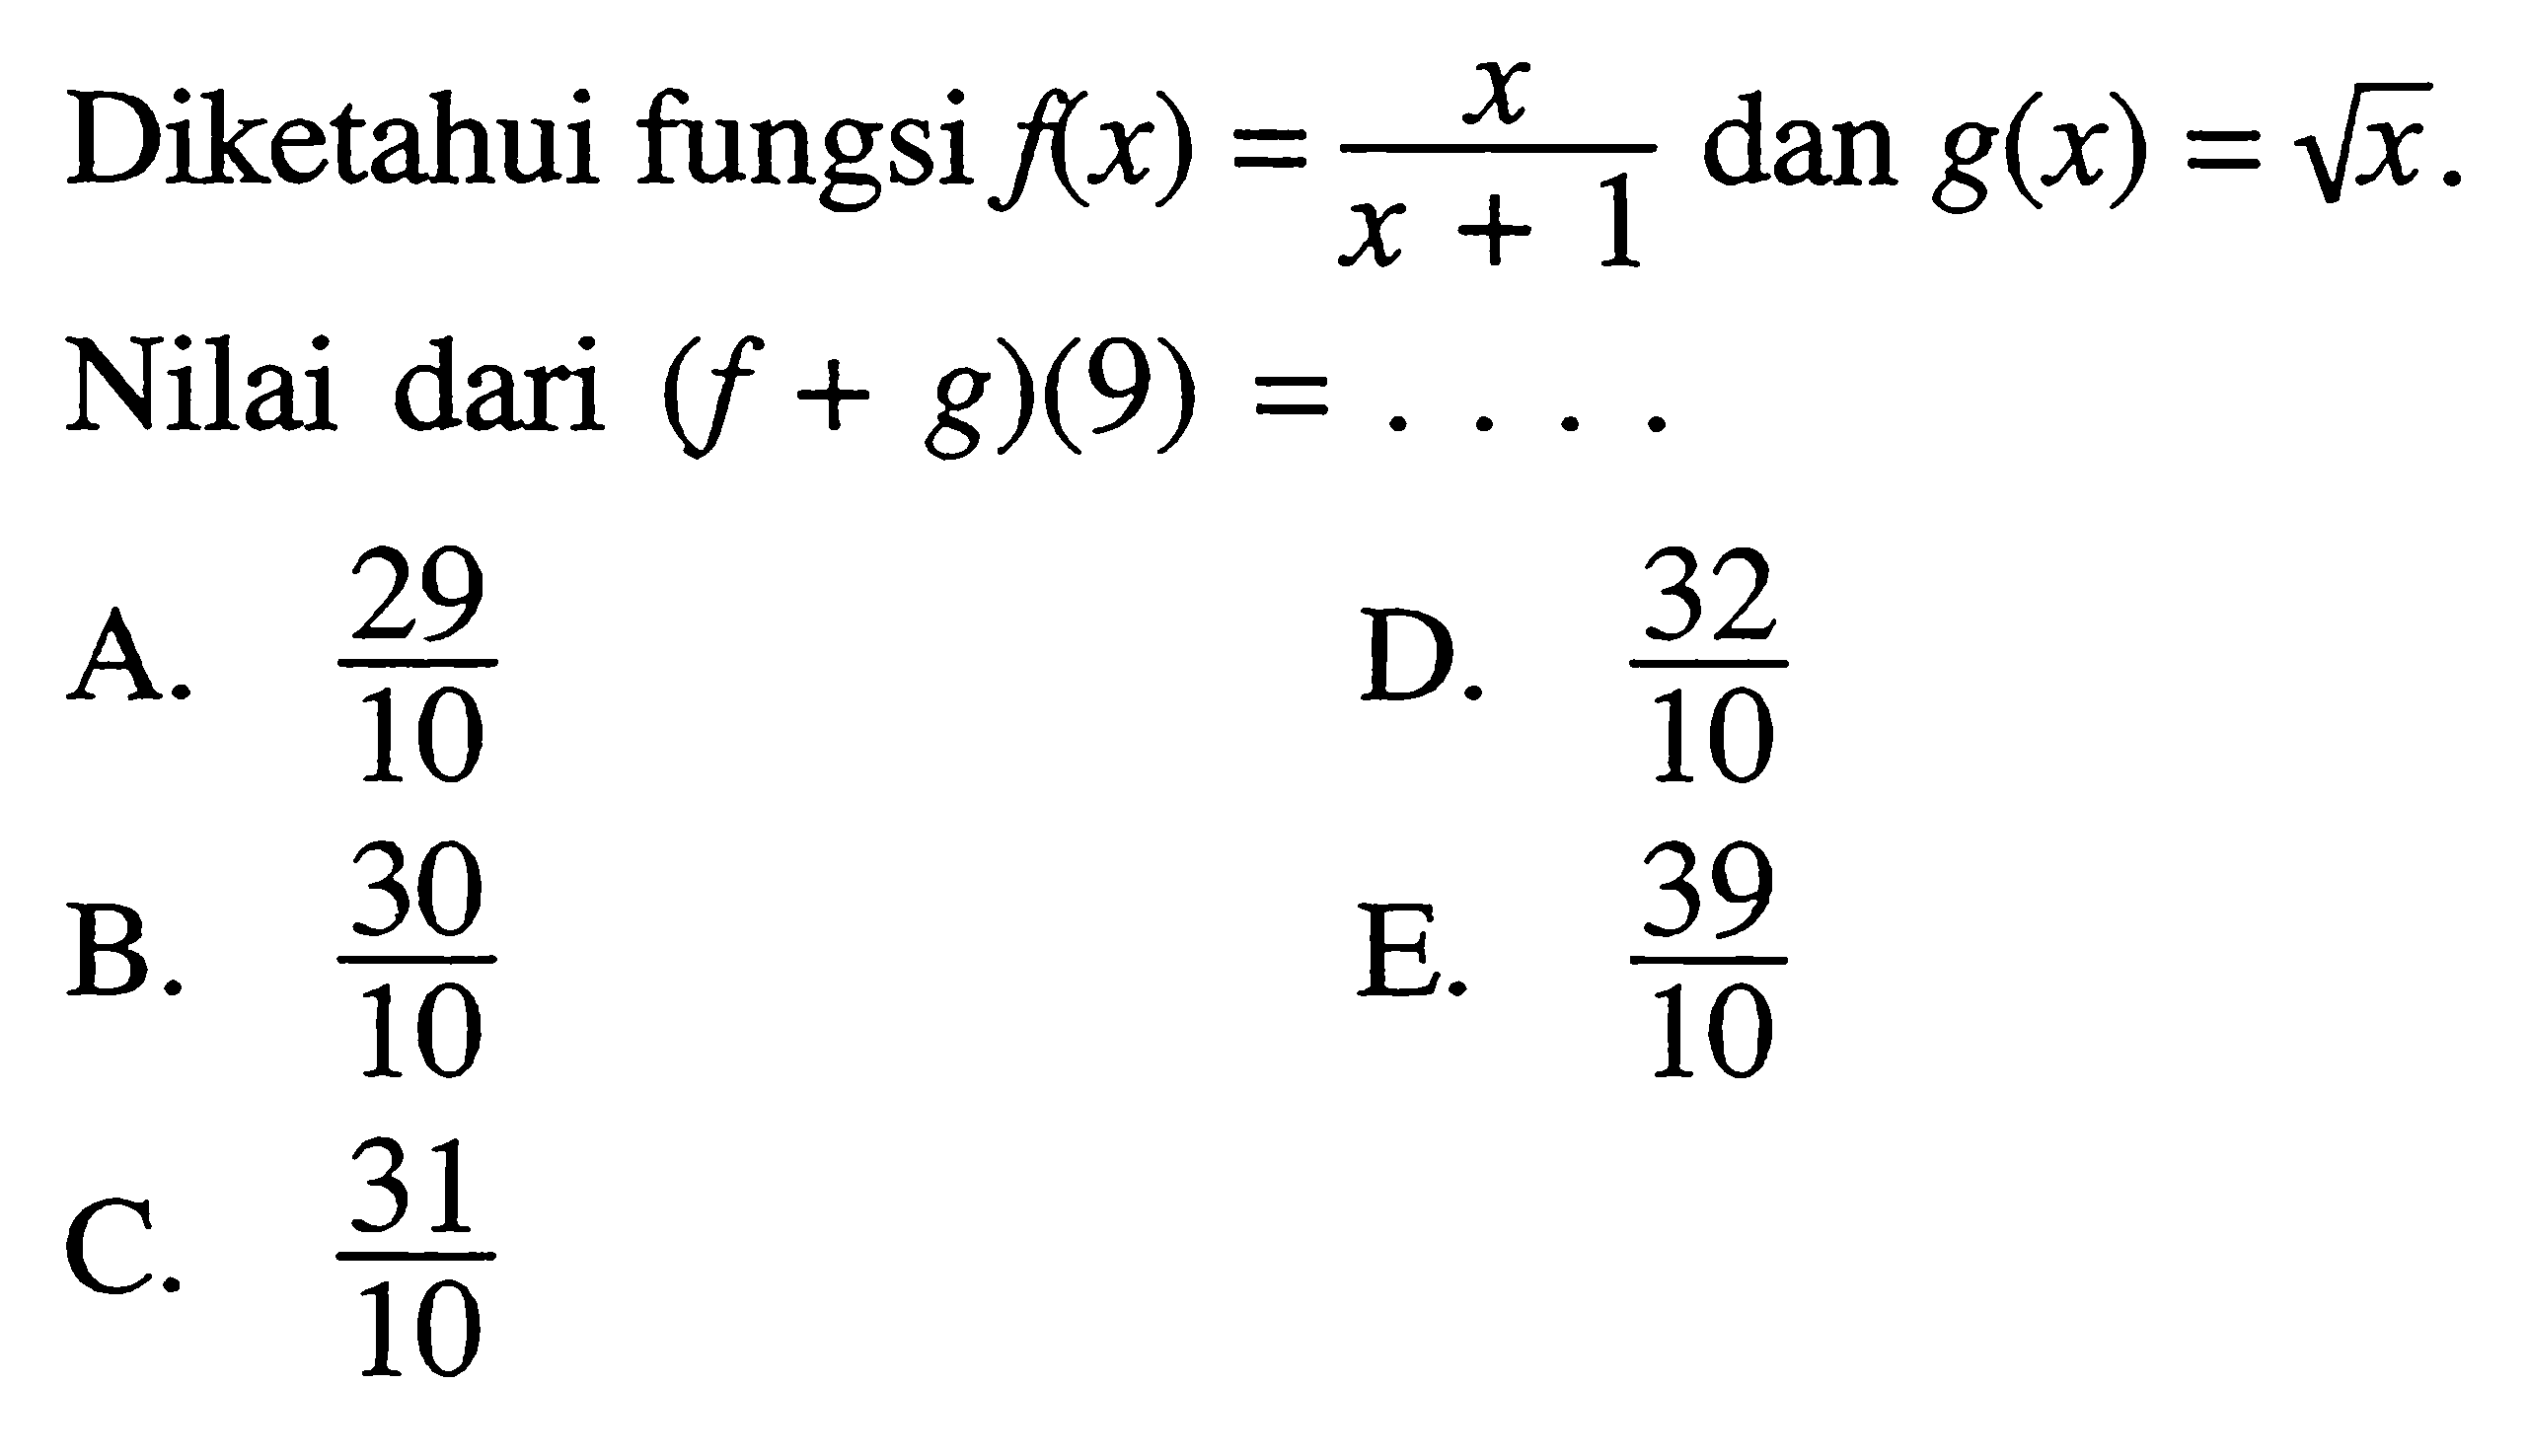 Diketahui fungsi  f(x)=x/(x+1) dan g(x)=akar(x). Nilai dari (f+g)(9)=...